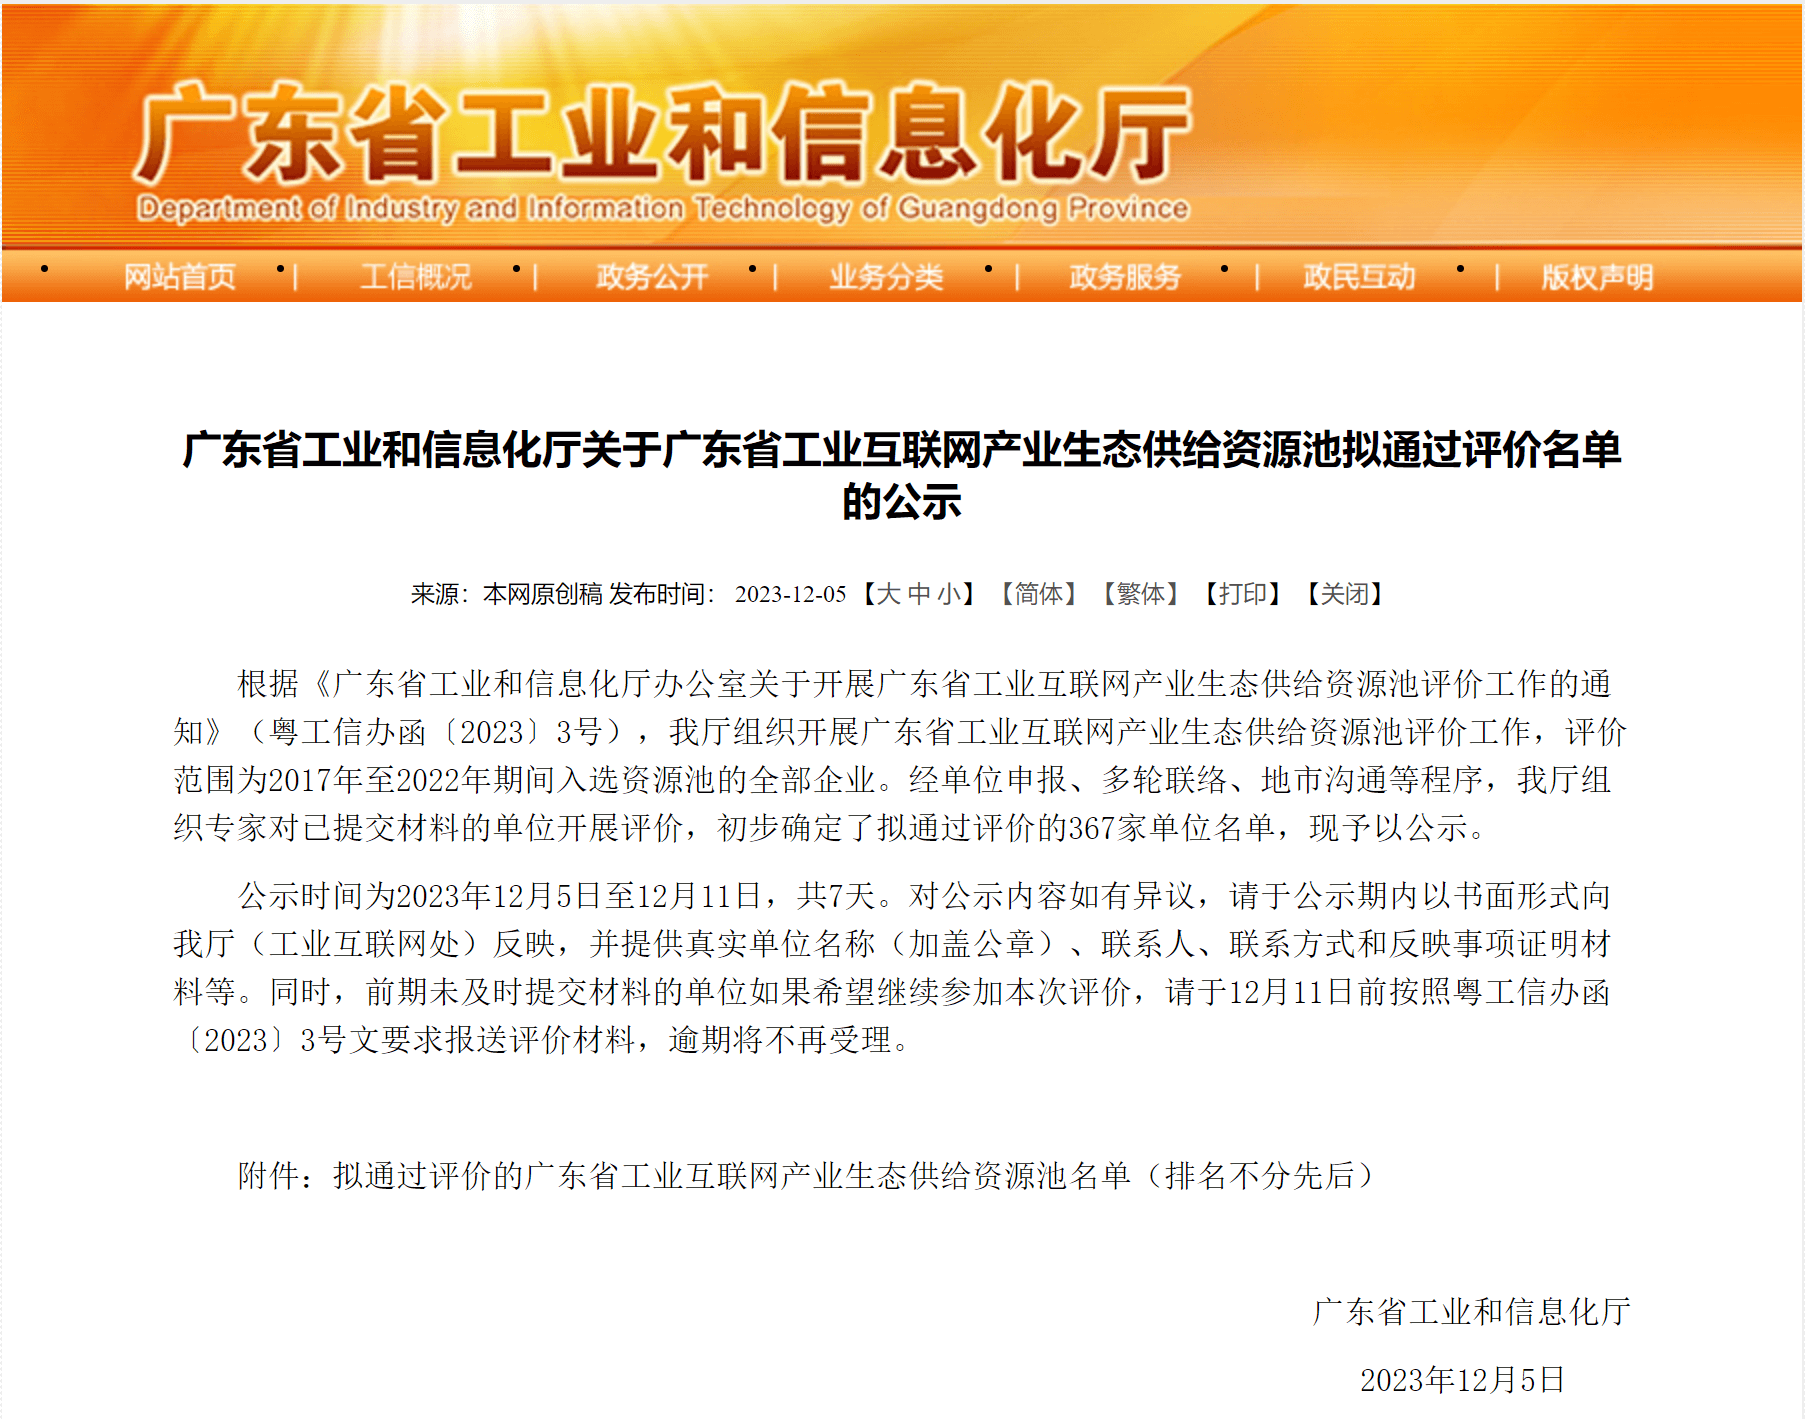 恭喜赛思软件入选广东省工业互联网产业生态供给资源池